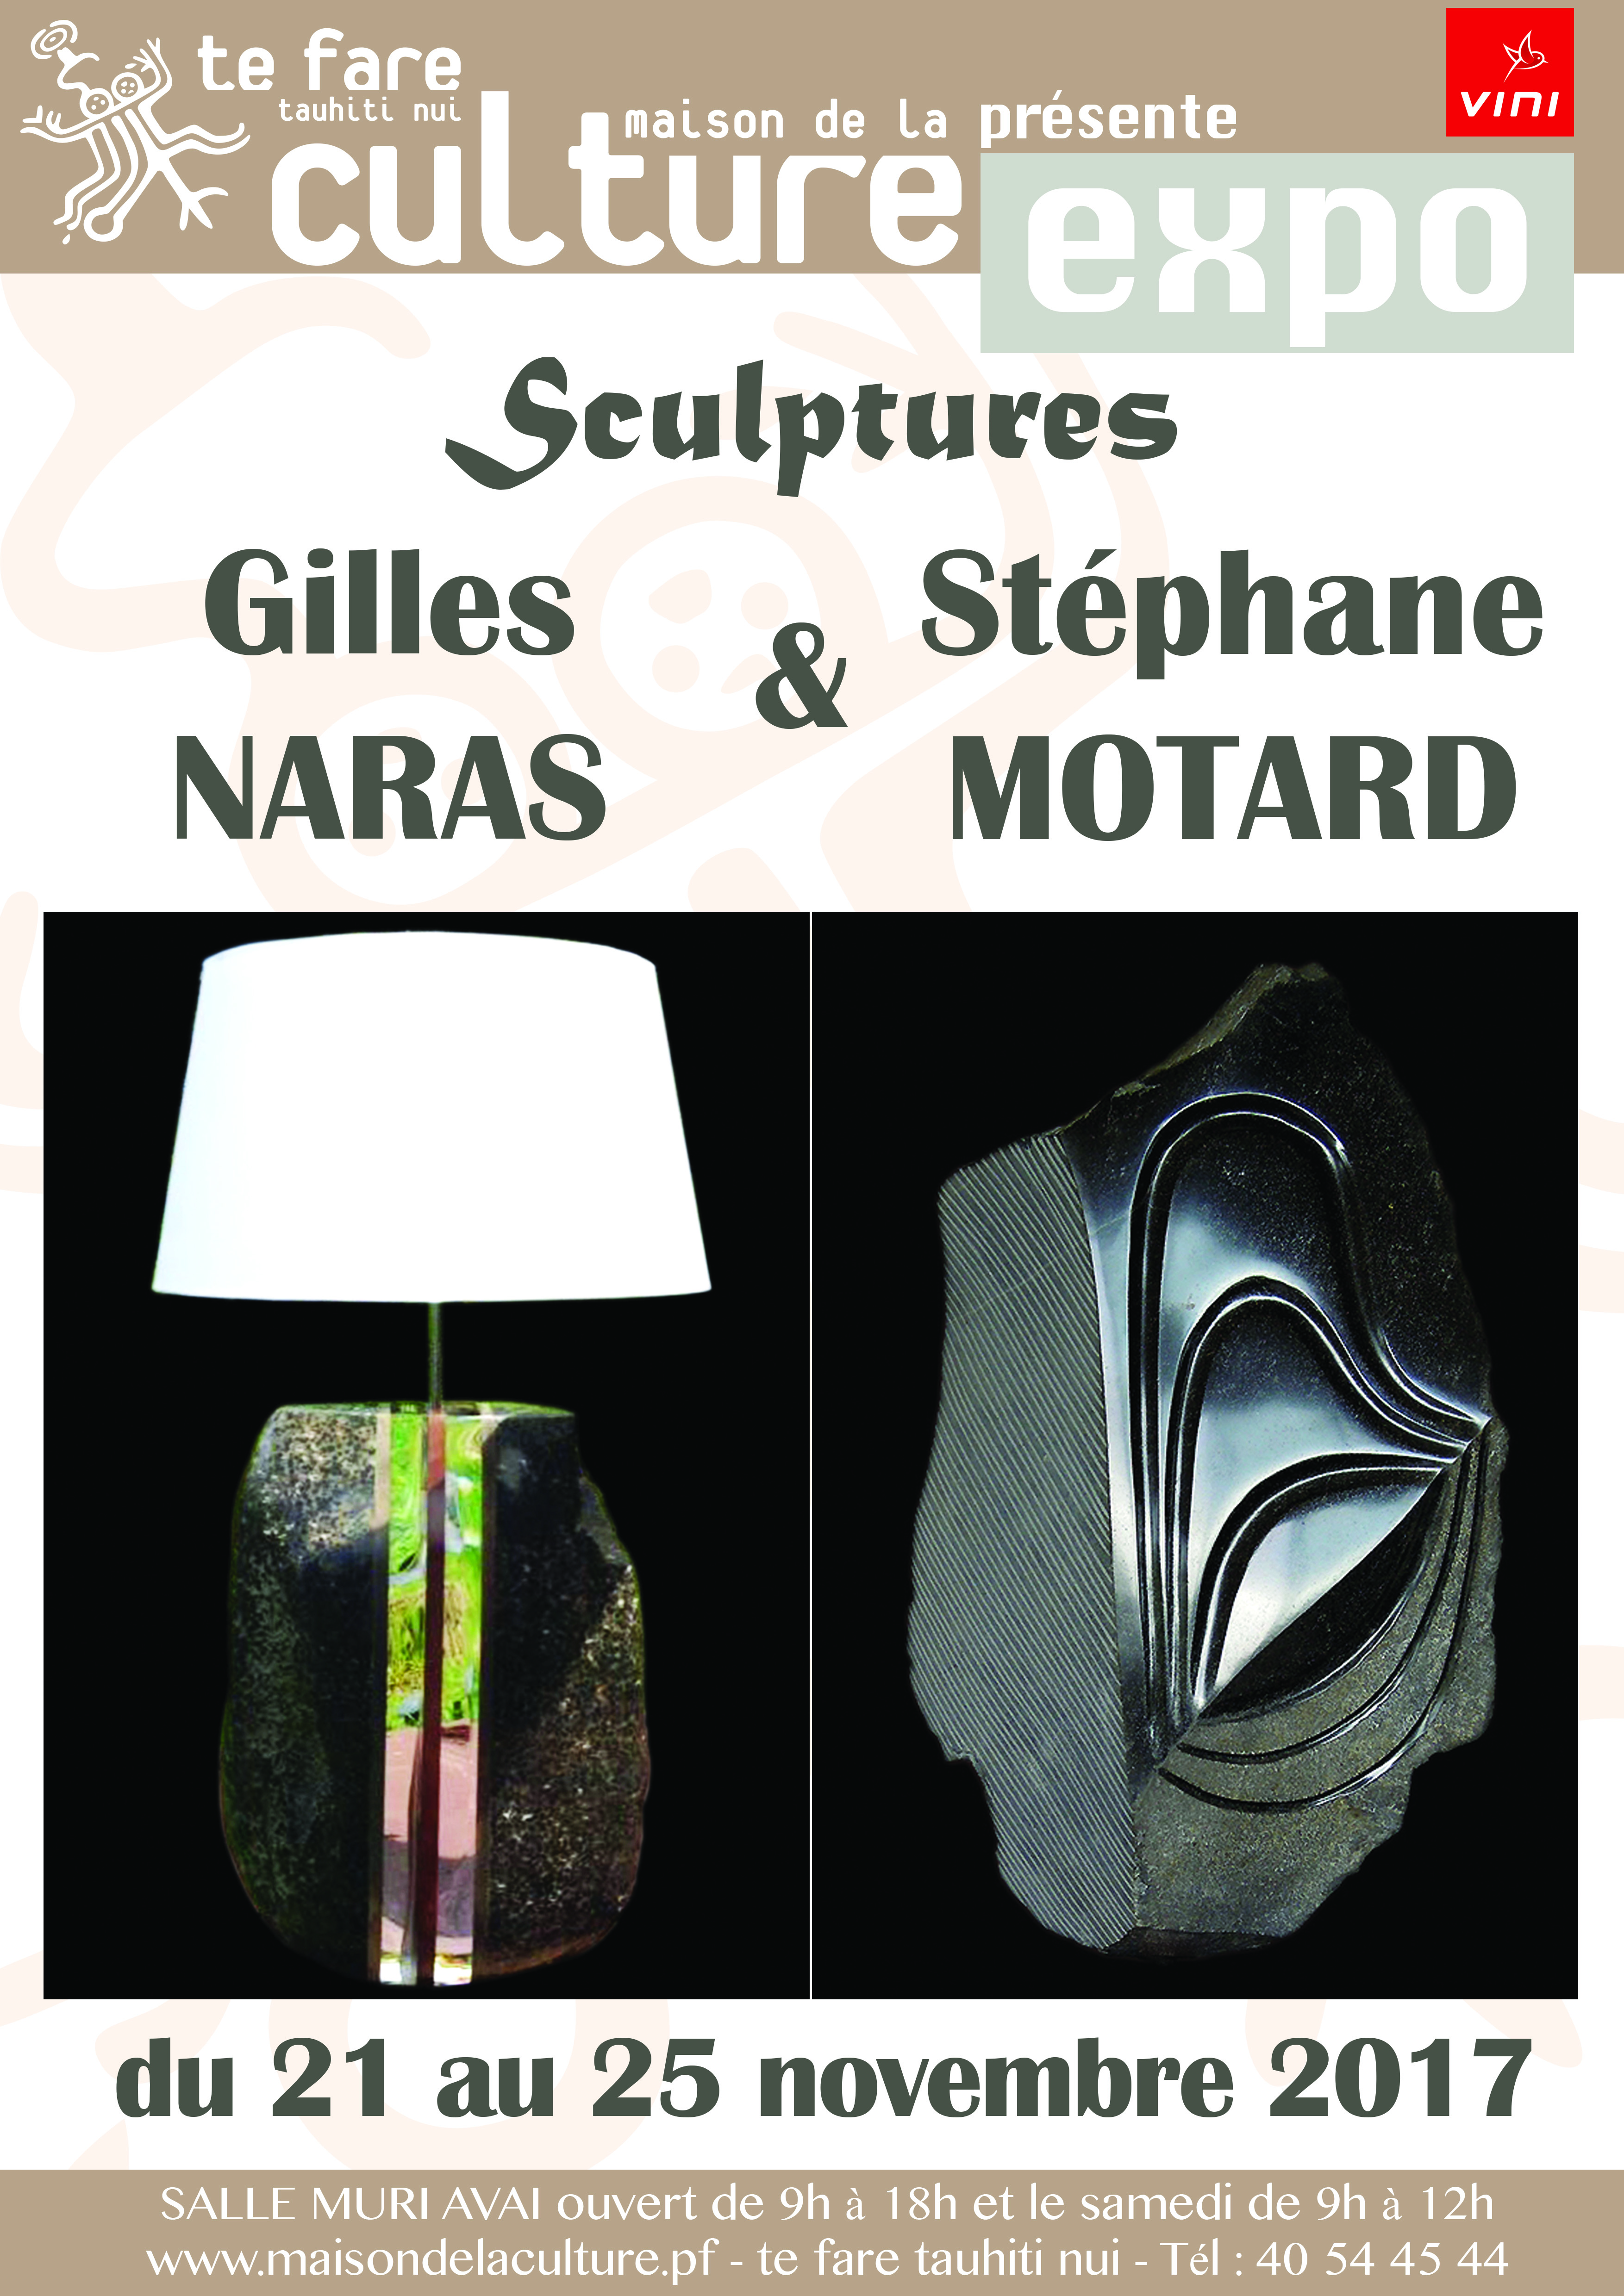 Les sculpteurs Gilles Naras et Stéphane Motard proposent une expo en duo